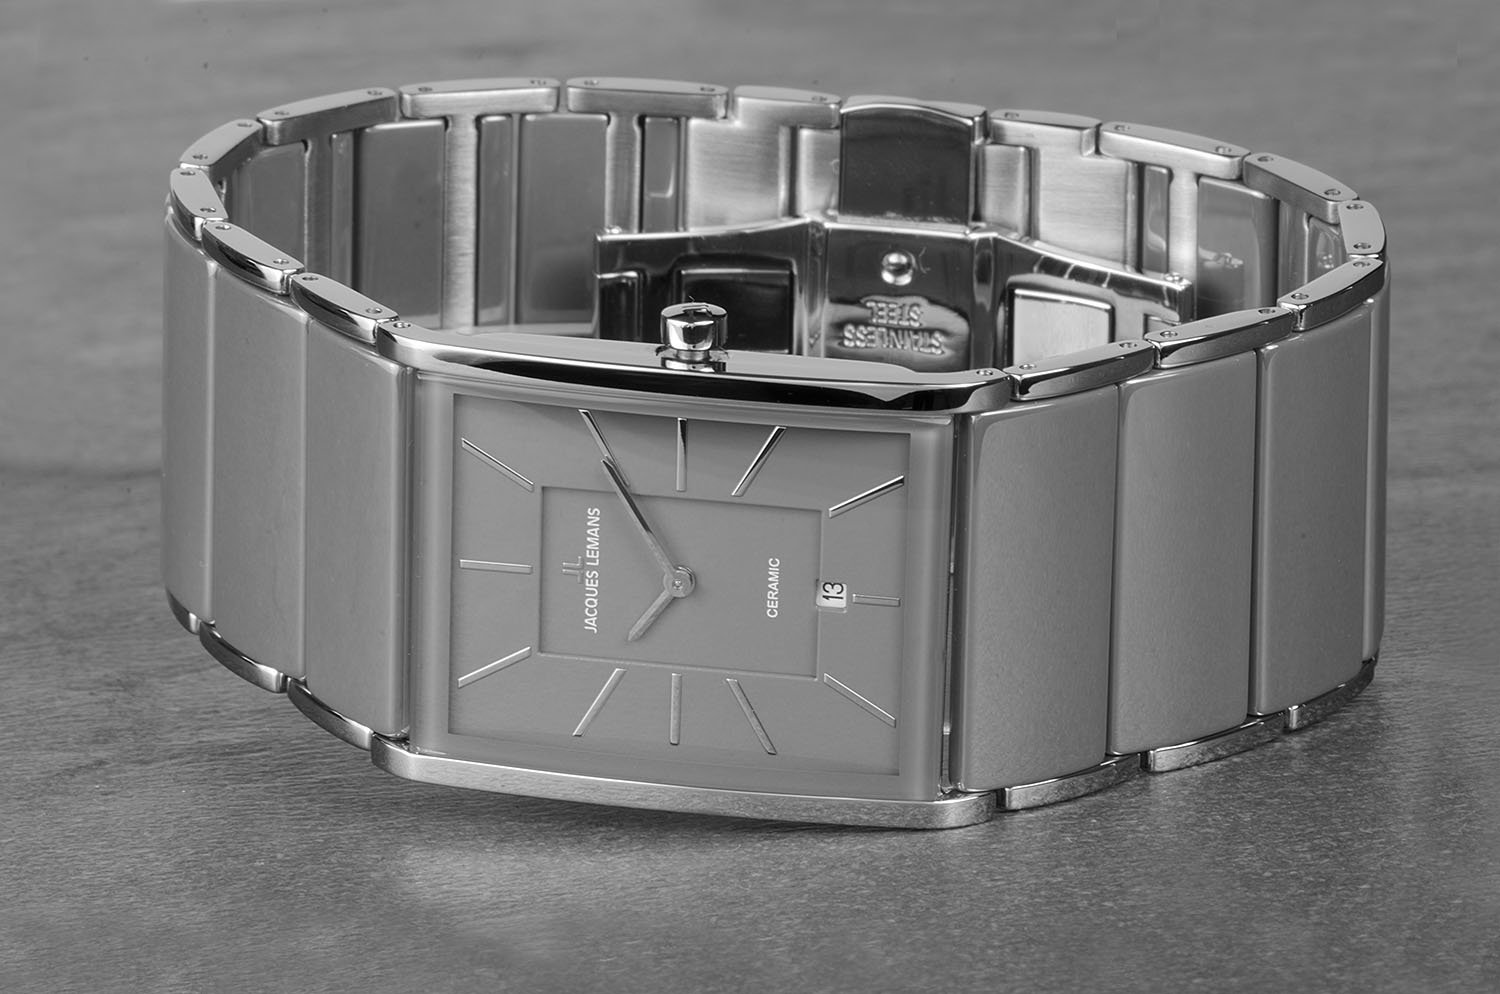 1-1939D, наручные часы Jacques Lemans